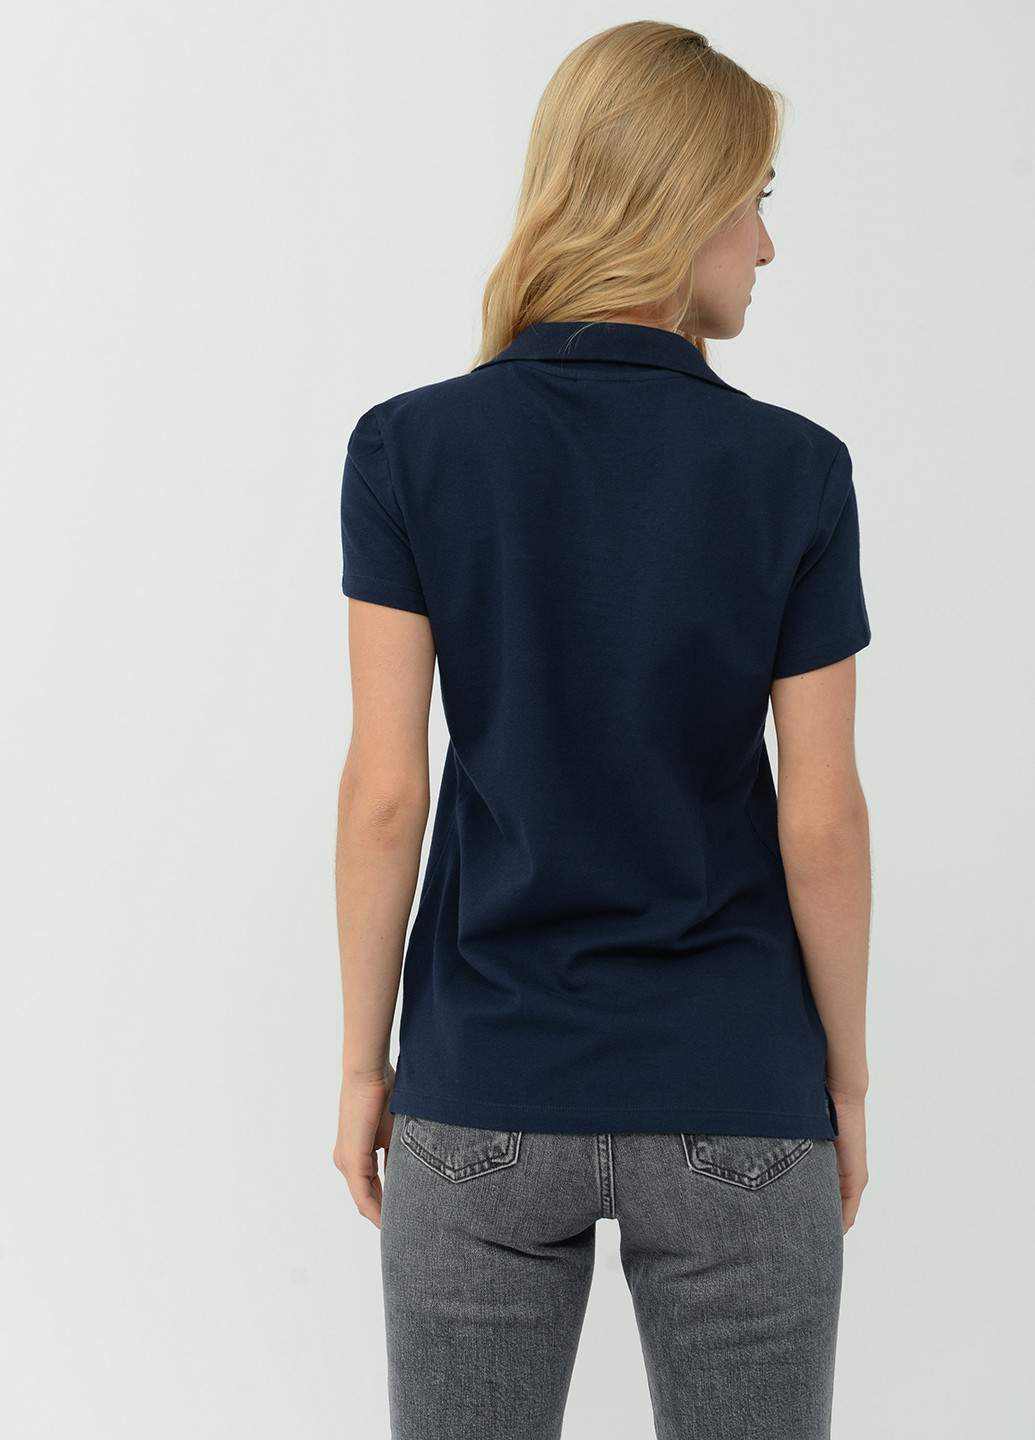 Темно-синяя женская футболка-поло Tom Tailor однотонная